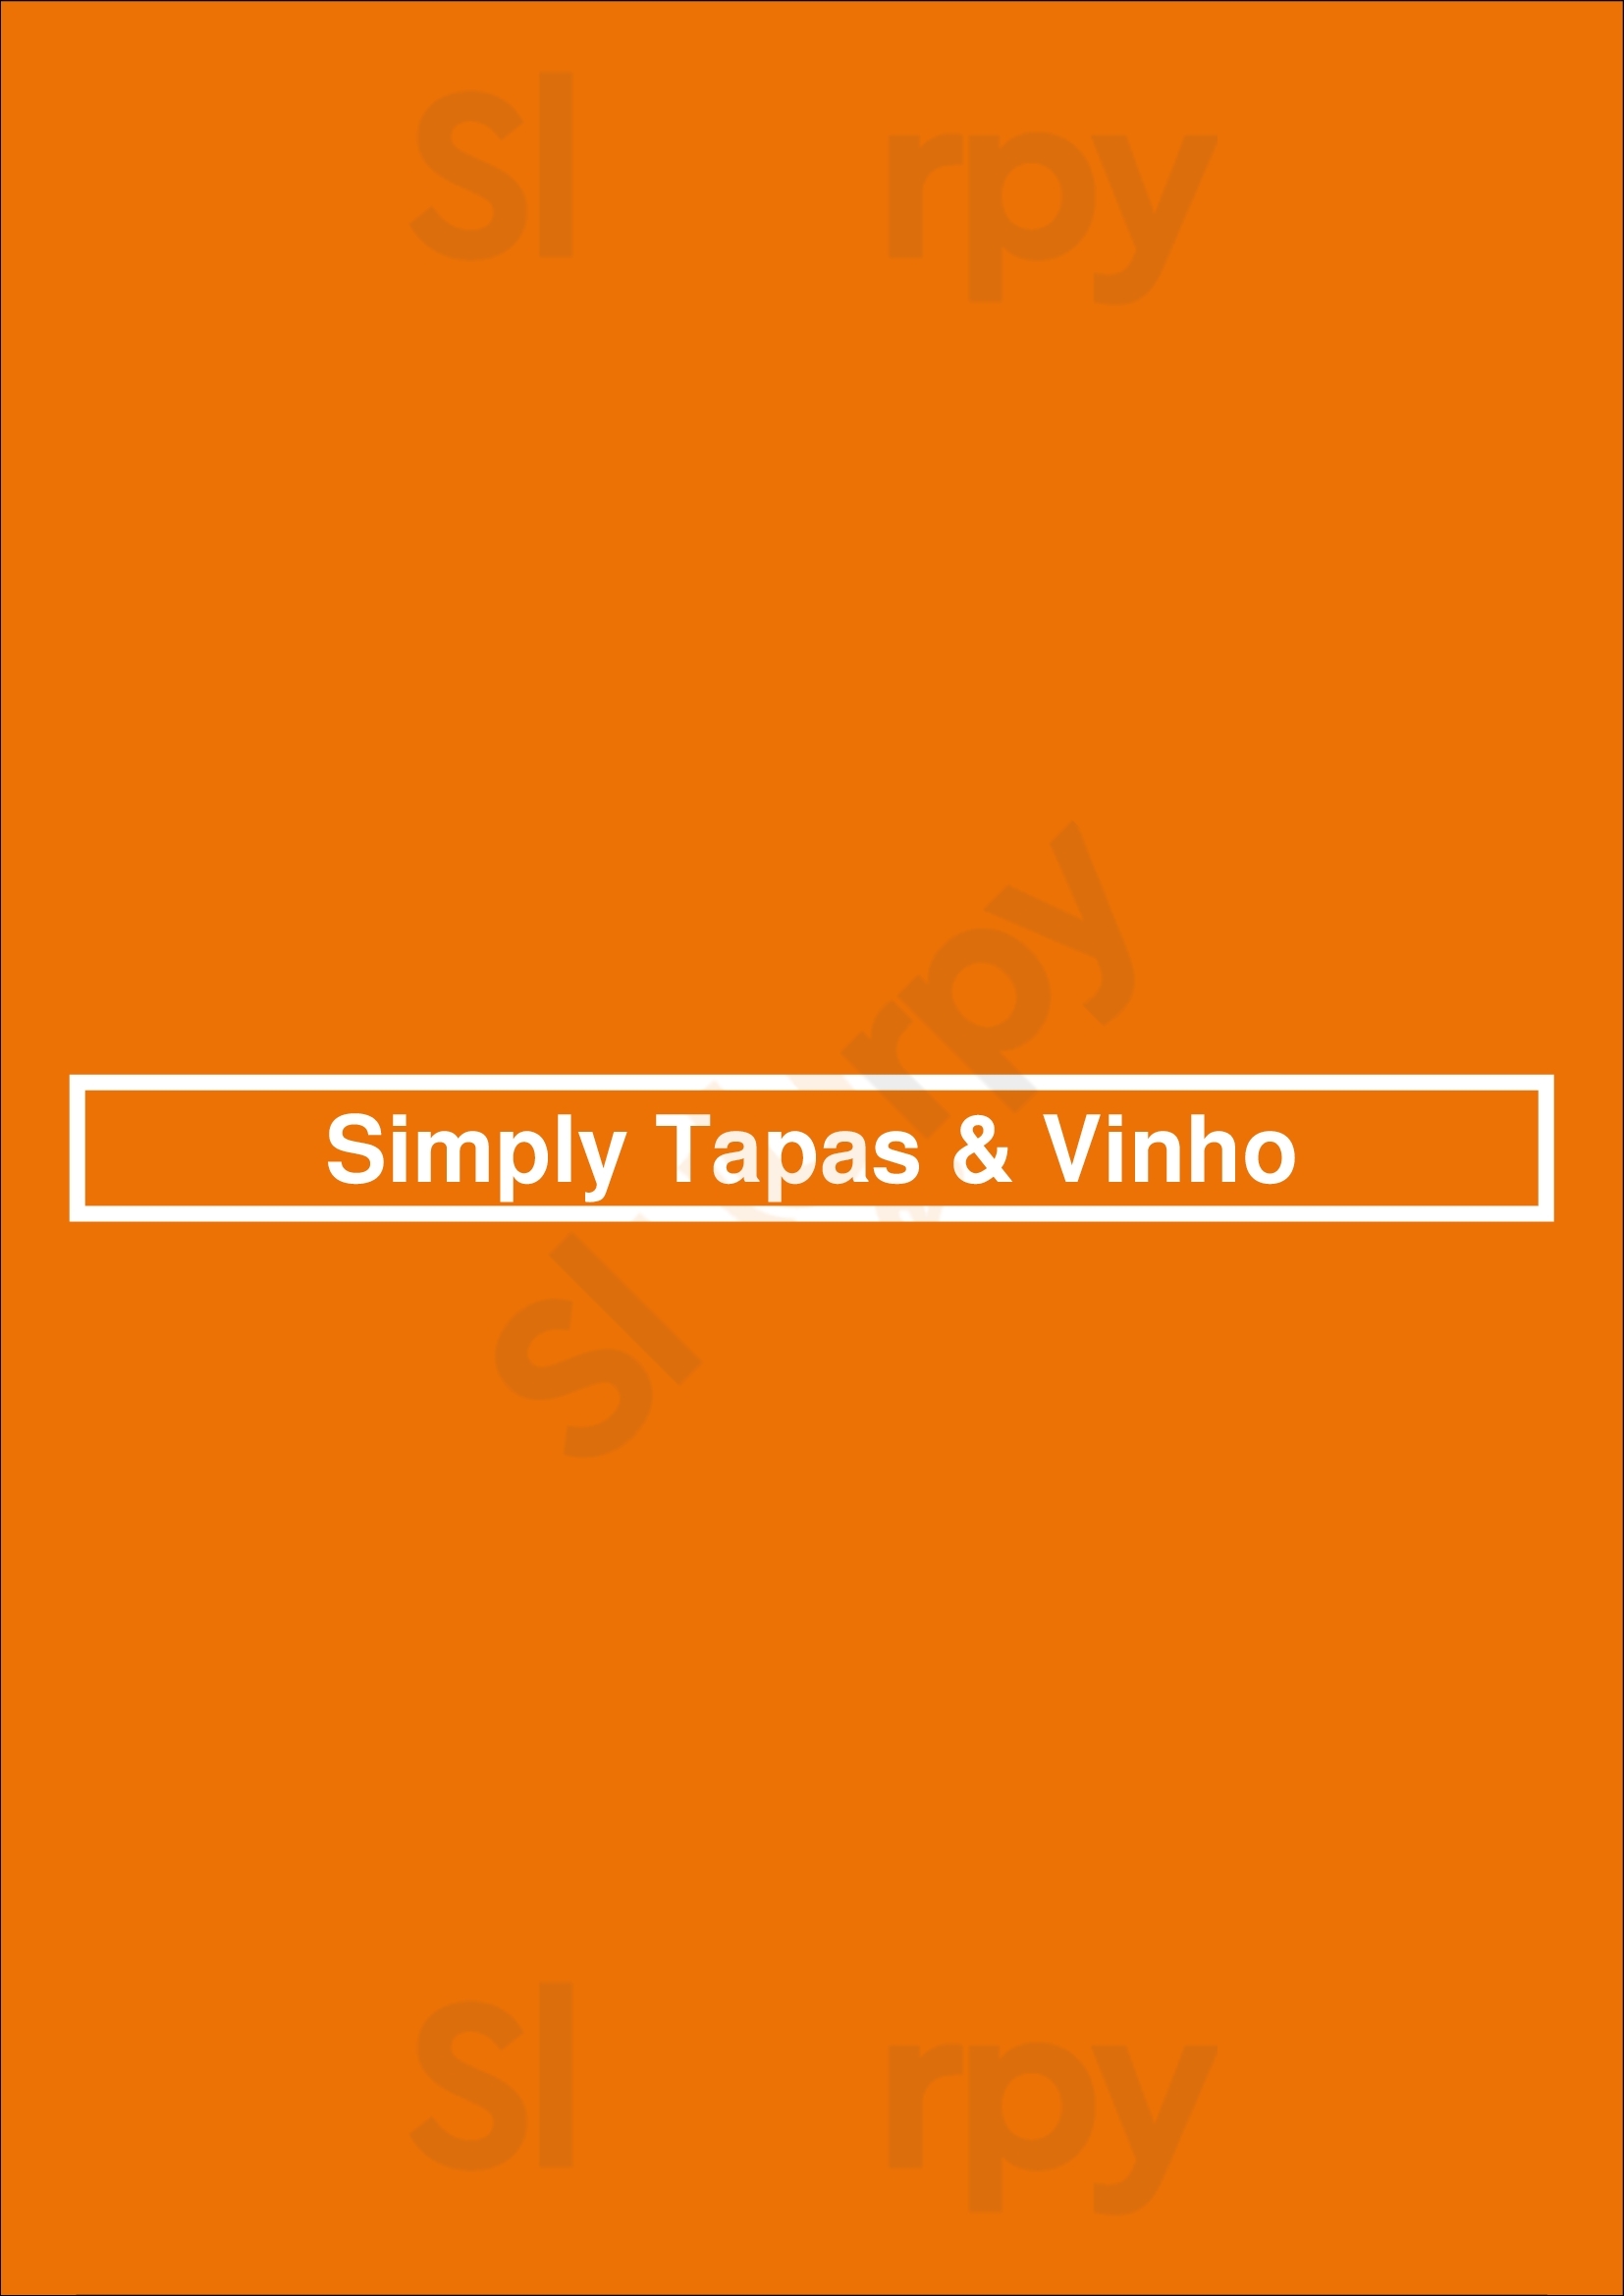 Simply Tapas & Vinho Loulé Menu - 1